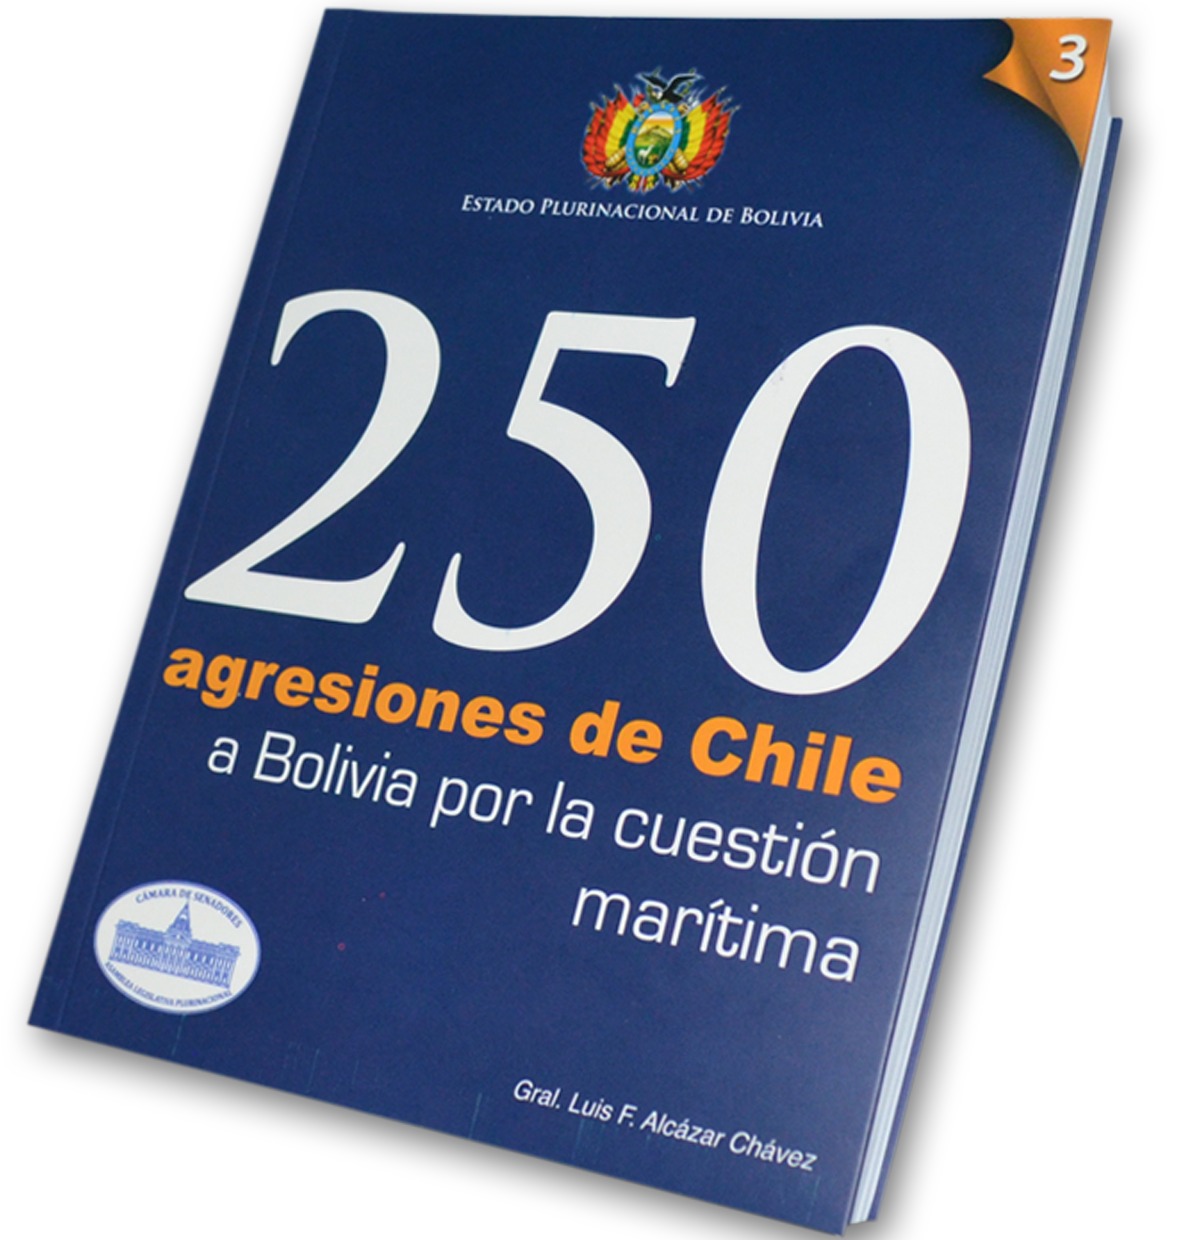 Gonzales: Libro “250 agresiones de Chile a Bolivia” es imprescindible para entender mejor la relación de ambos países